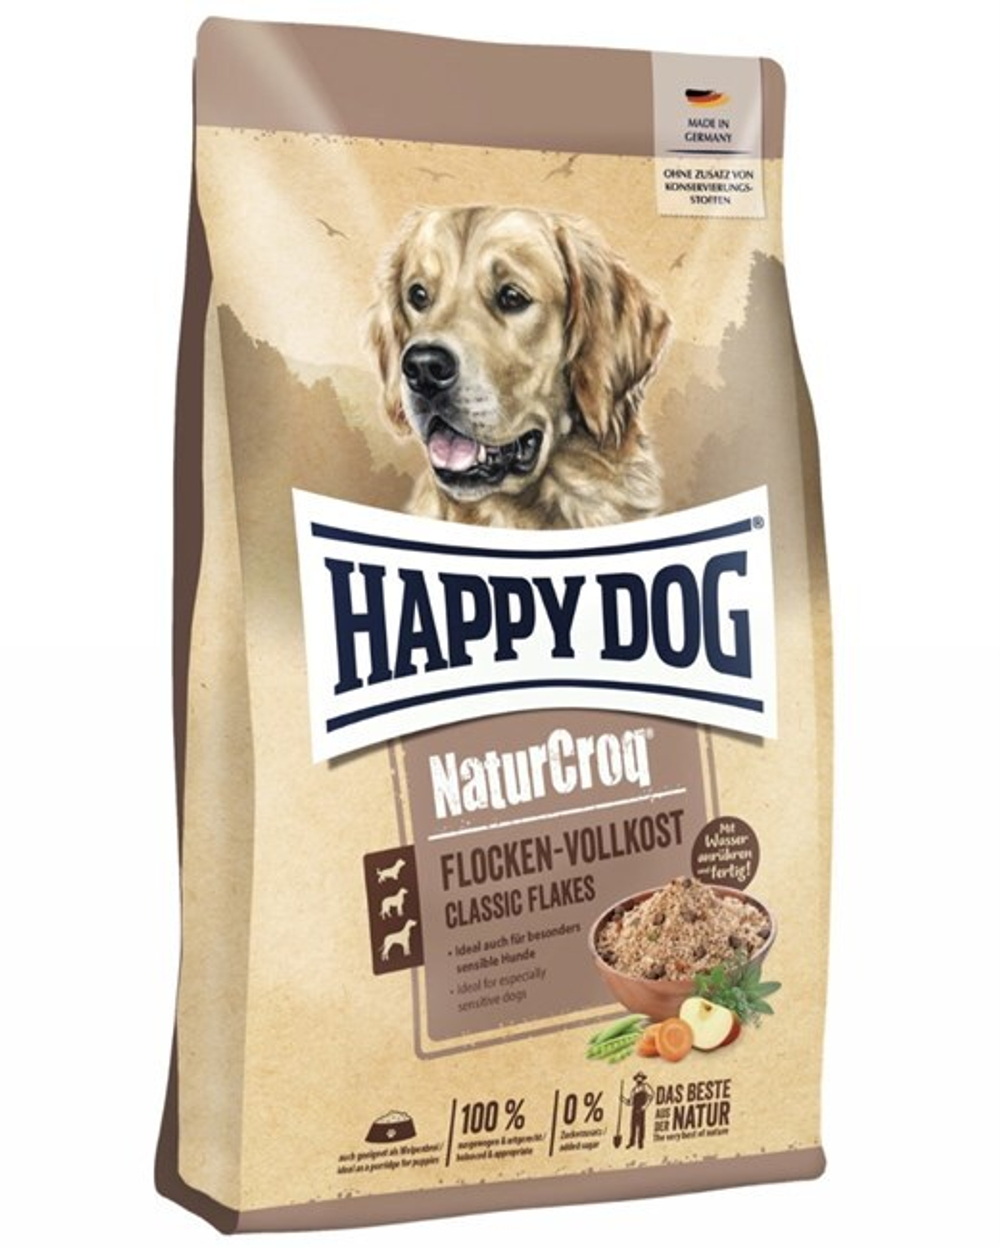 Happy Dog Flocken - хлопья для собак для смешивания с влажным кормом (мясо, кукуруза, горох, морковь, травы)